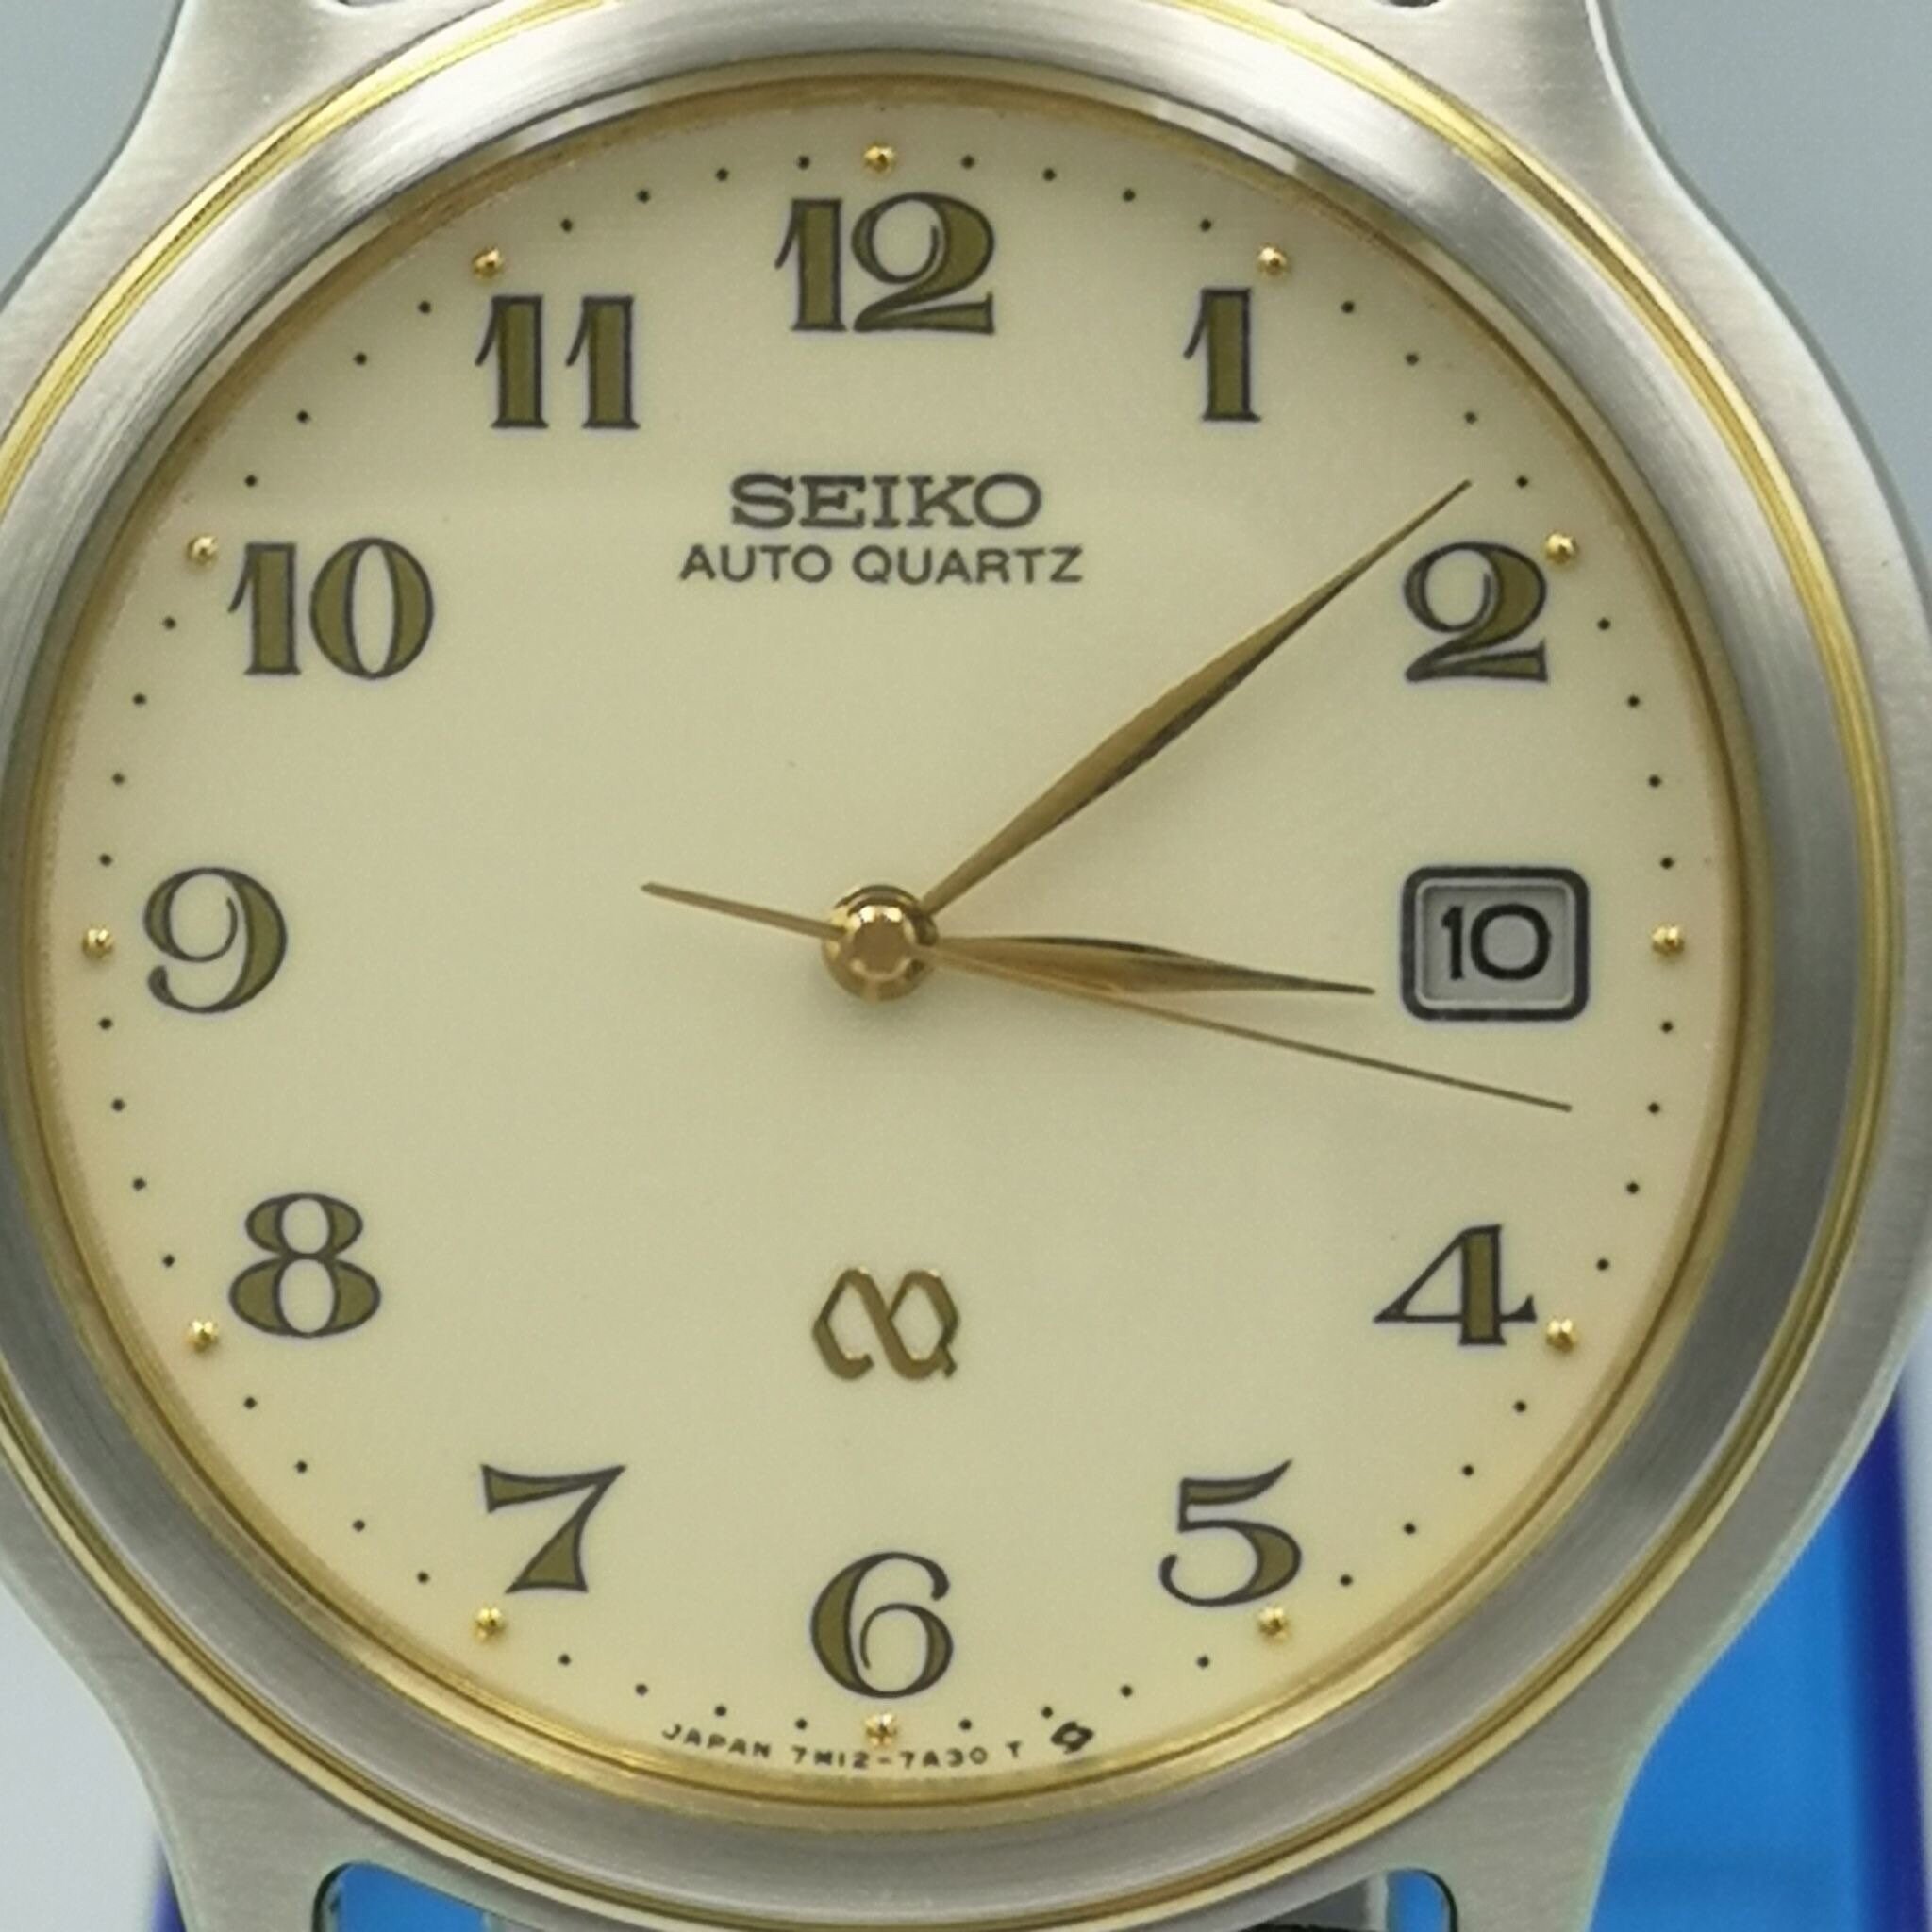 Vintage and Rare Seiko AUTO Quartz Watch. 7M12-7A10 - Etsy Canada